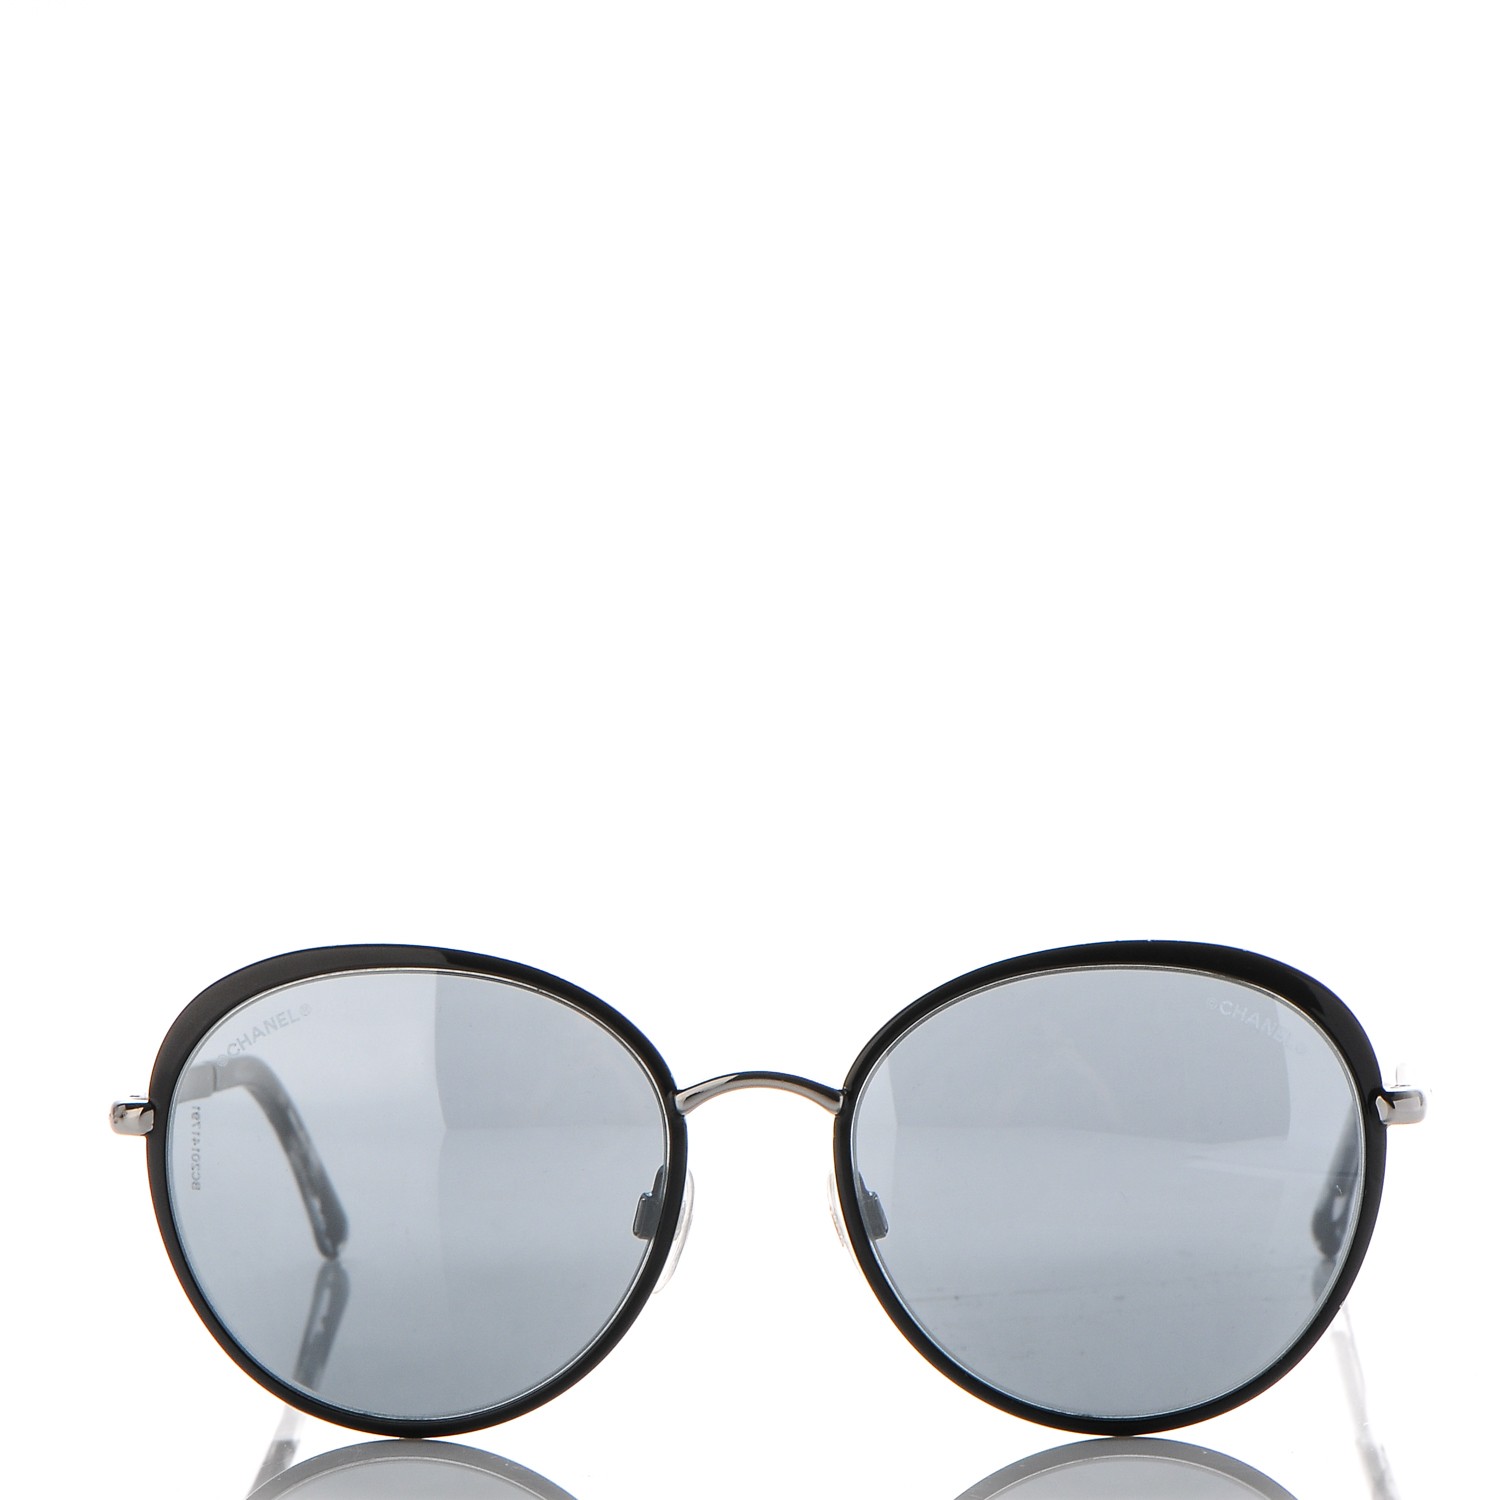 CHANEL Round Spring Sunglasses 4206 Black Silver 190692 | FASHIONPHILE